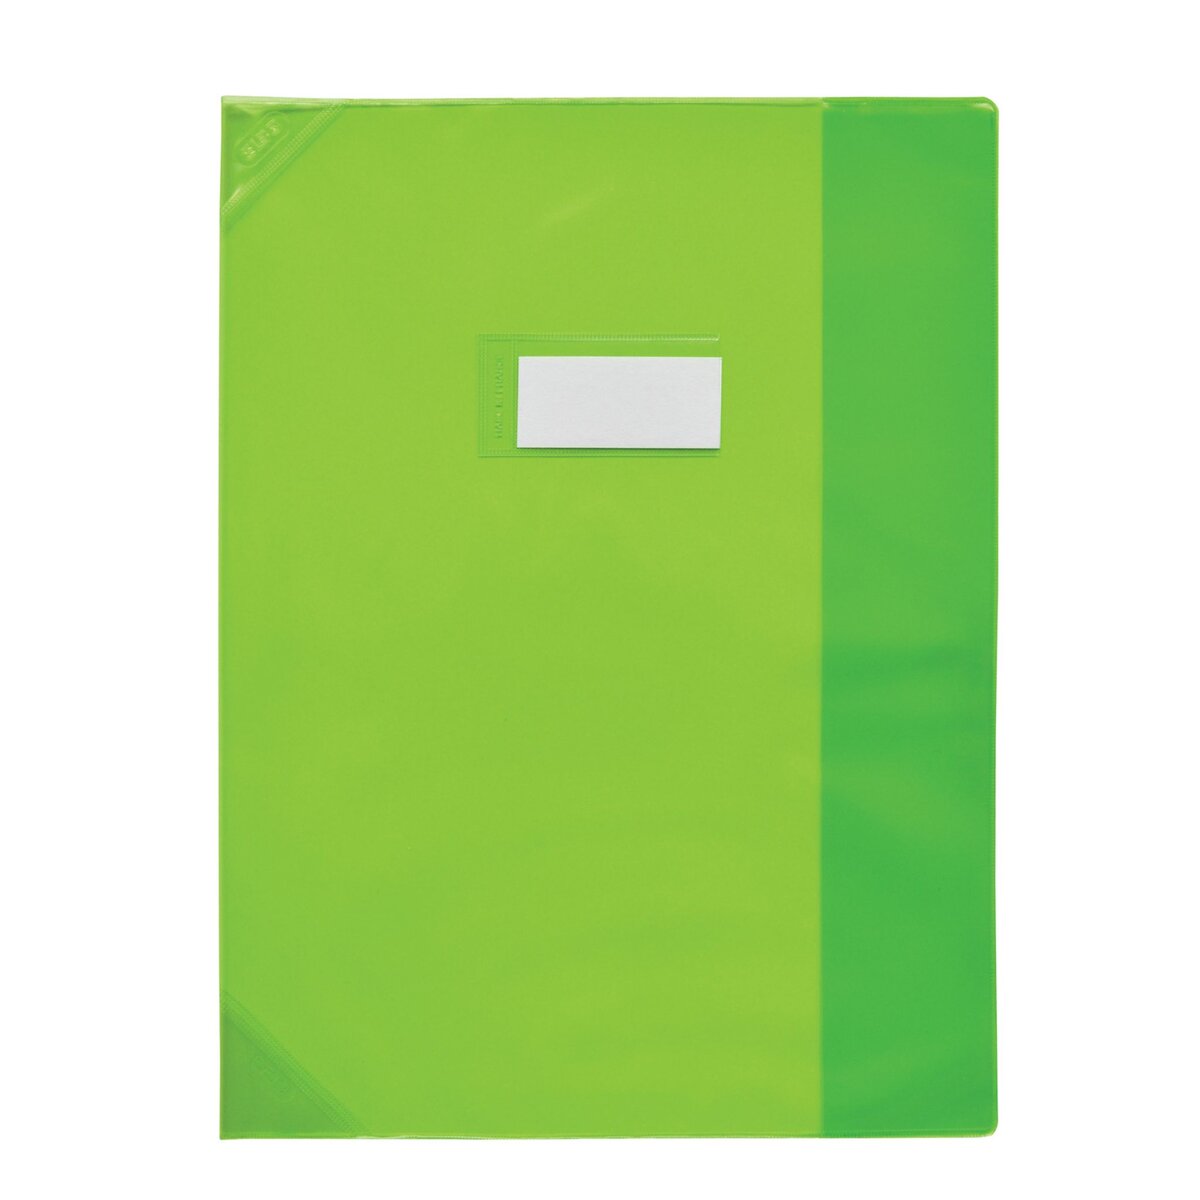 ELBA  Protège cahier 21x29,7cm strong line vert translucide